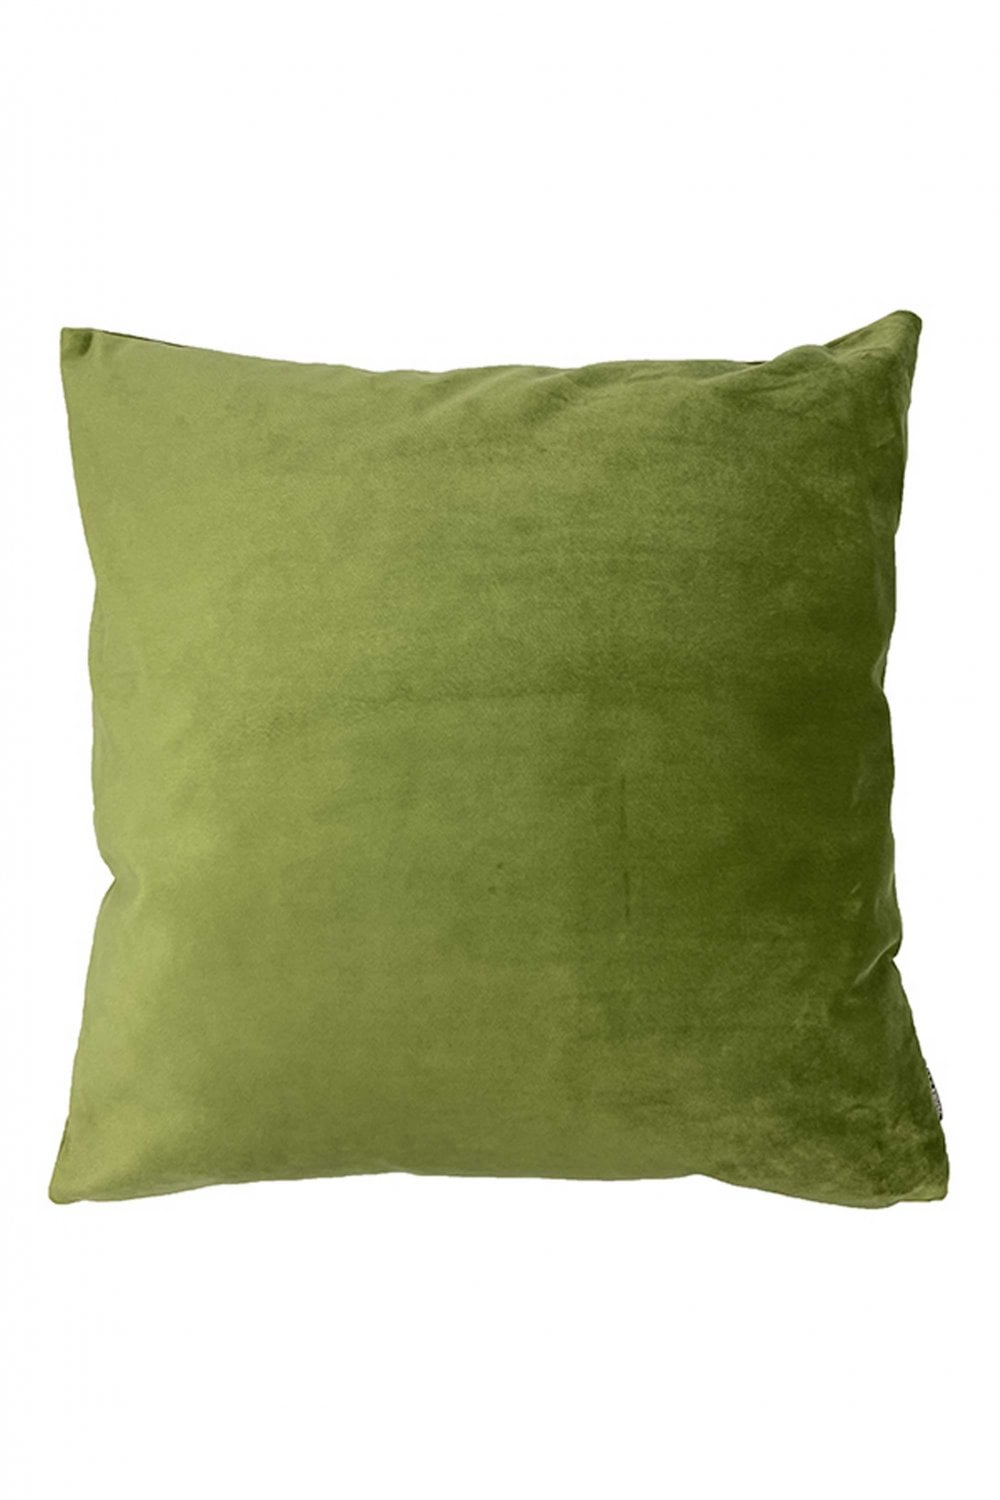 vanilla-fly-moss-green-cushion